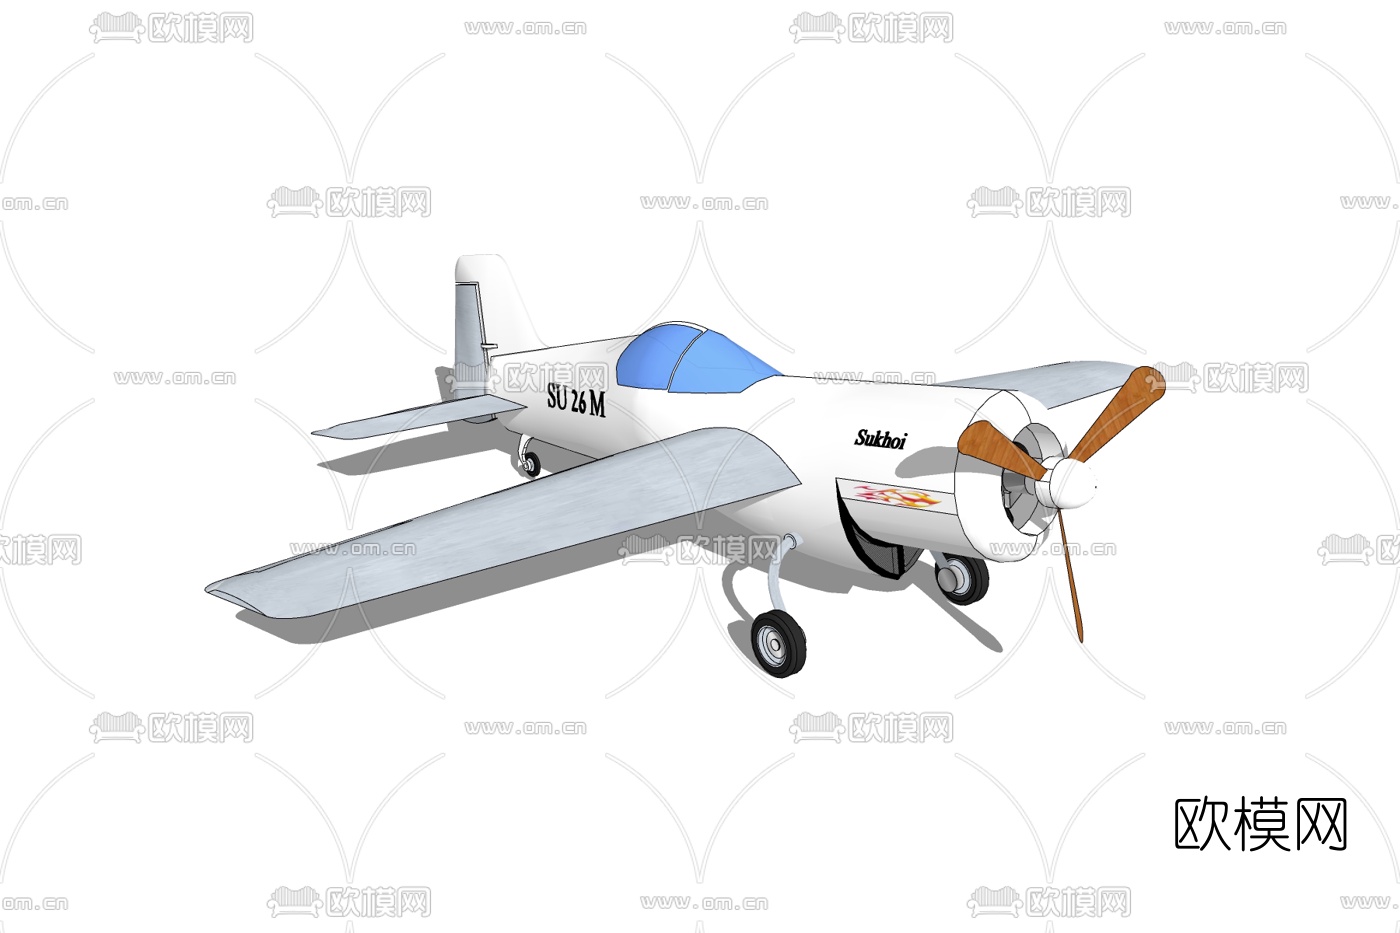 三架小型飞机 库存图片. 图片 包括有 机体, 陆运, 白天, 跑道, 水平, 鼻子, 通风, 红色, 着陆 - 30928151